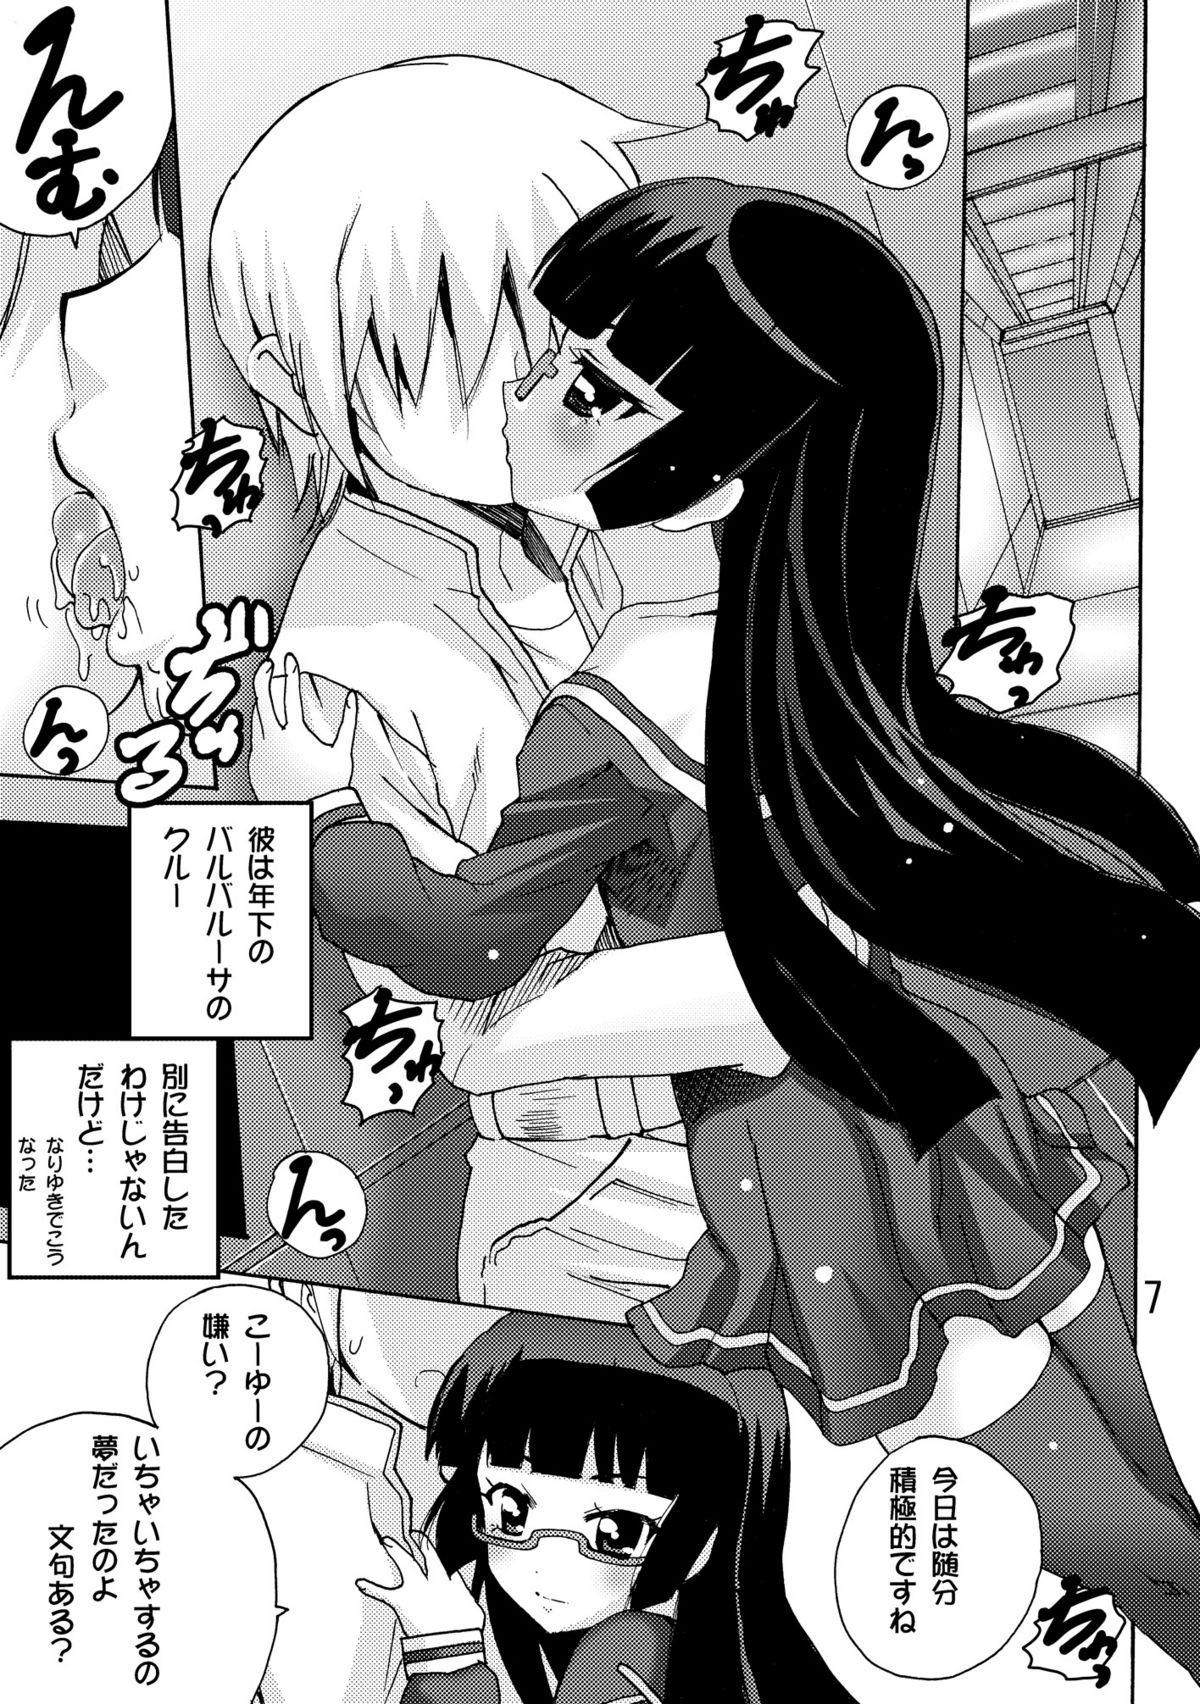 Lesbian Sex [PH (TAM)] Koisuru Uchuu Kaizoku Musume (Pirates) - Yuri, Lamp-kan no Himegoto hen - (Mouretsu Pirates) - Mouretsu pirates 4some - Page 7